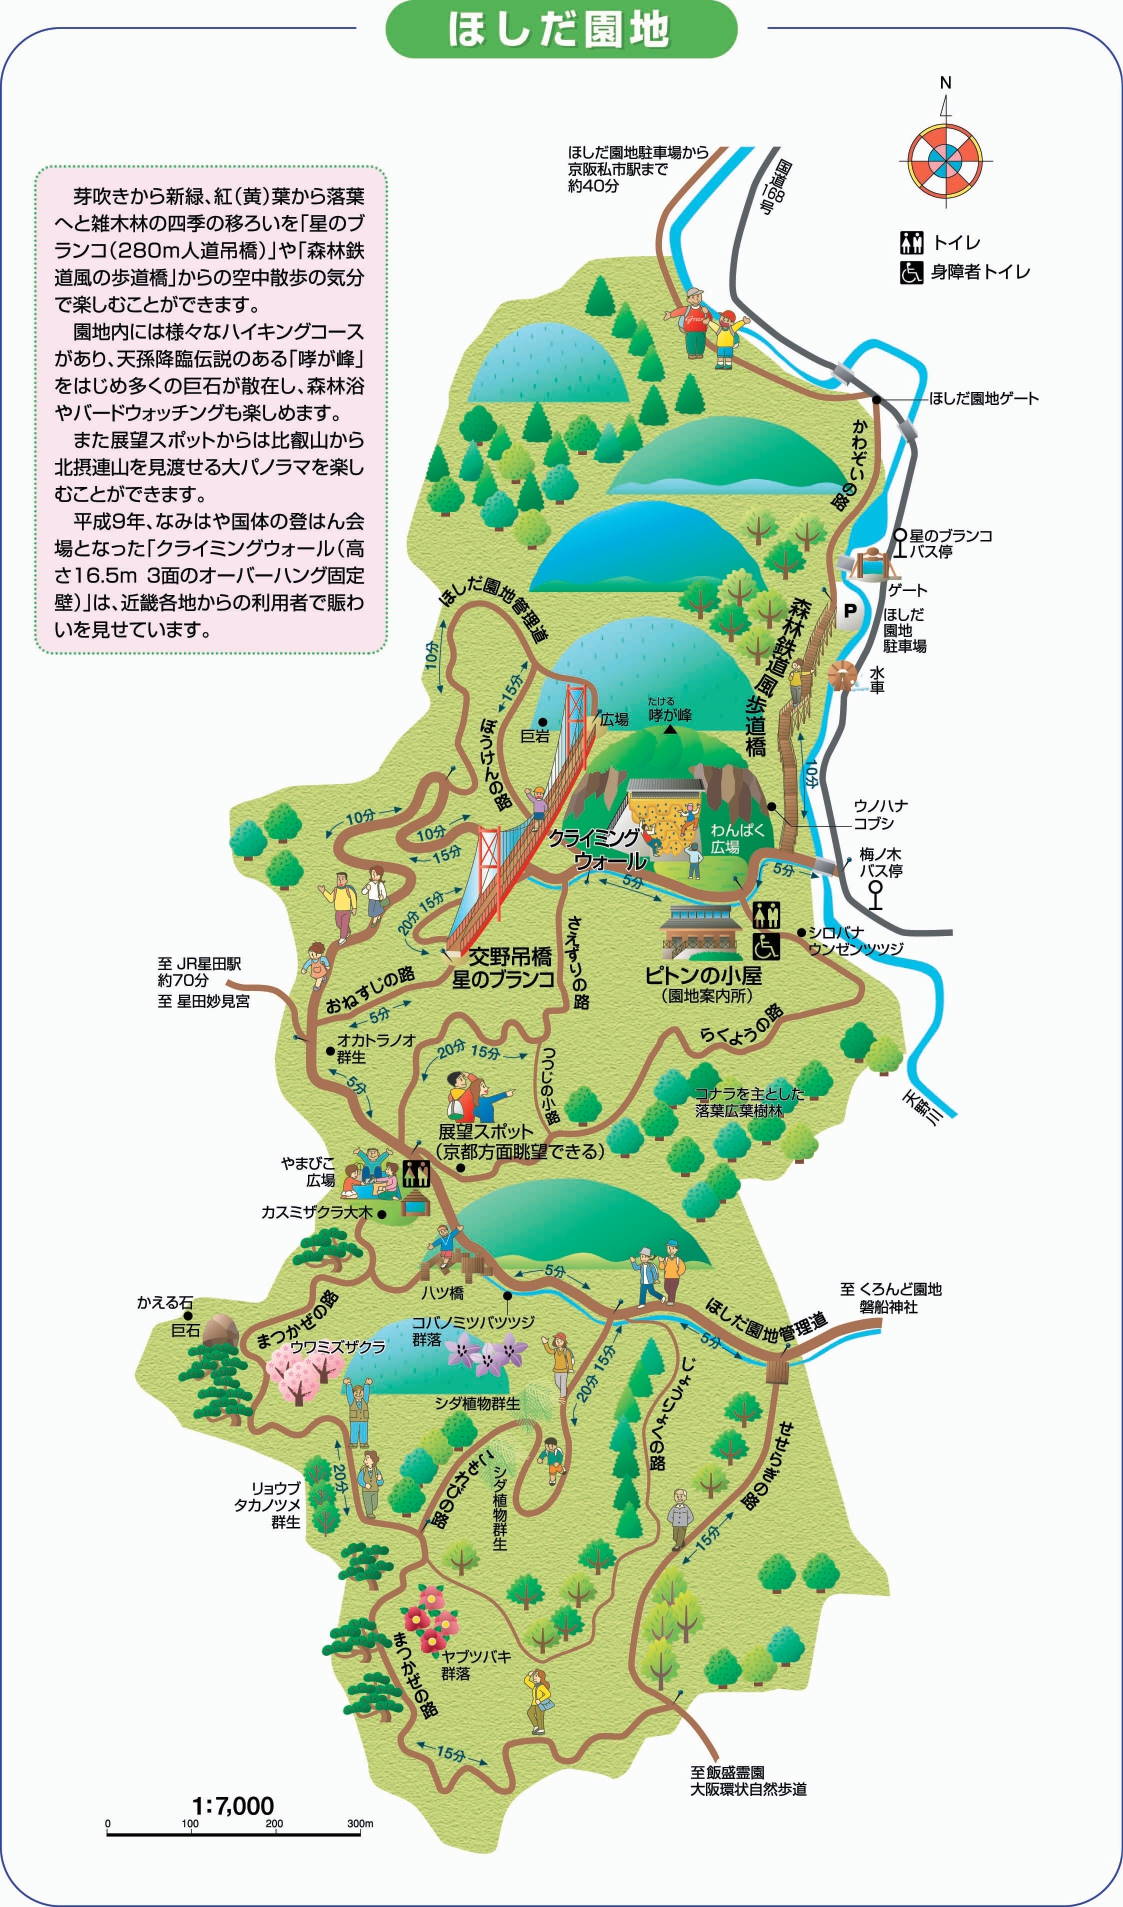 ほしだ園地 星のブランコへのアクセス ハイキングコース 大阪府交野市の紅葉の名所 休日充実化計画